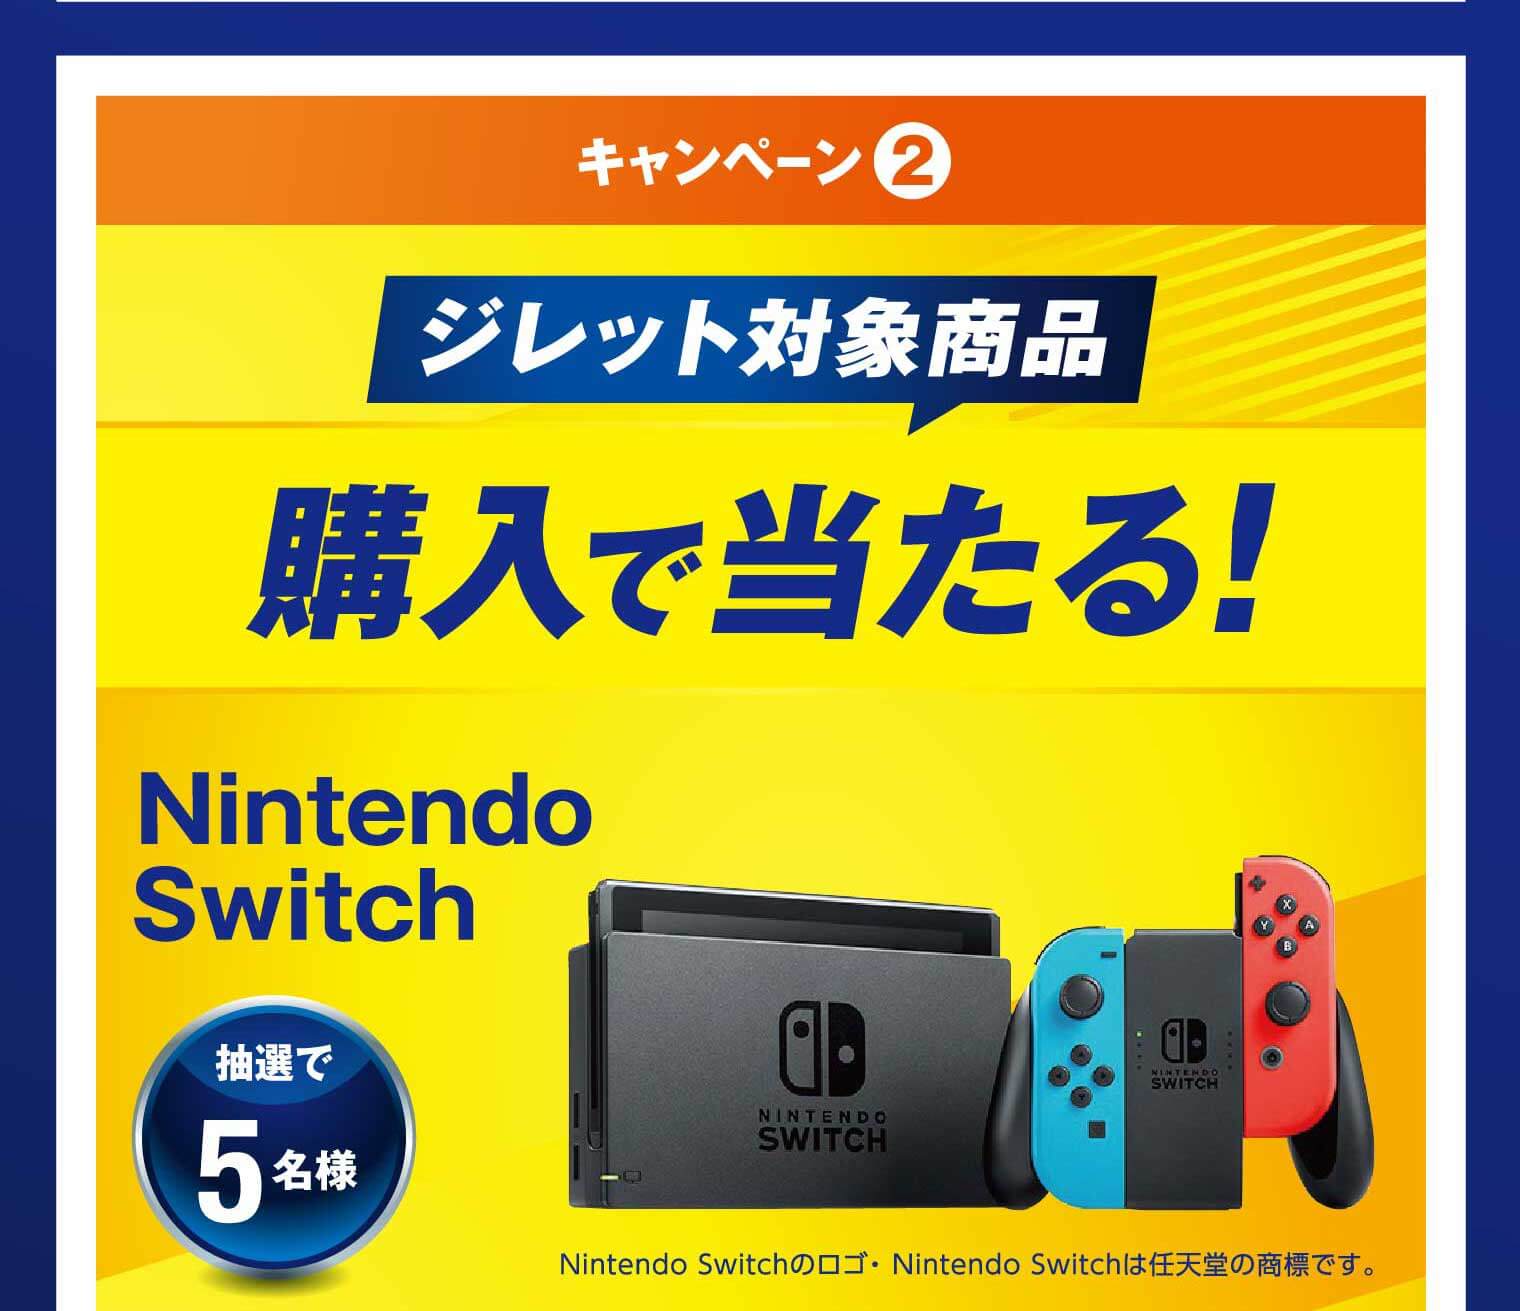 キャンペーン② ジレット対象商品購入で当たる！ Nintendo Switch 抽選で5名様